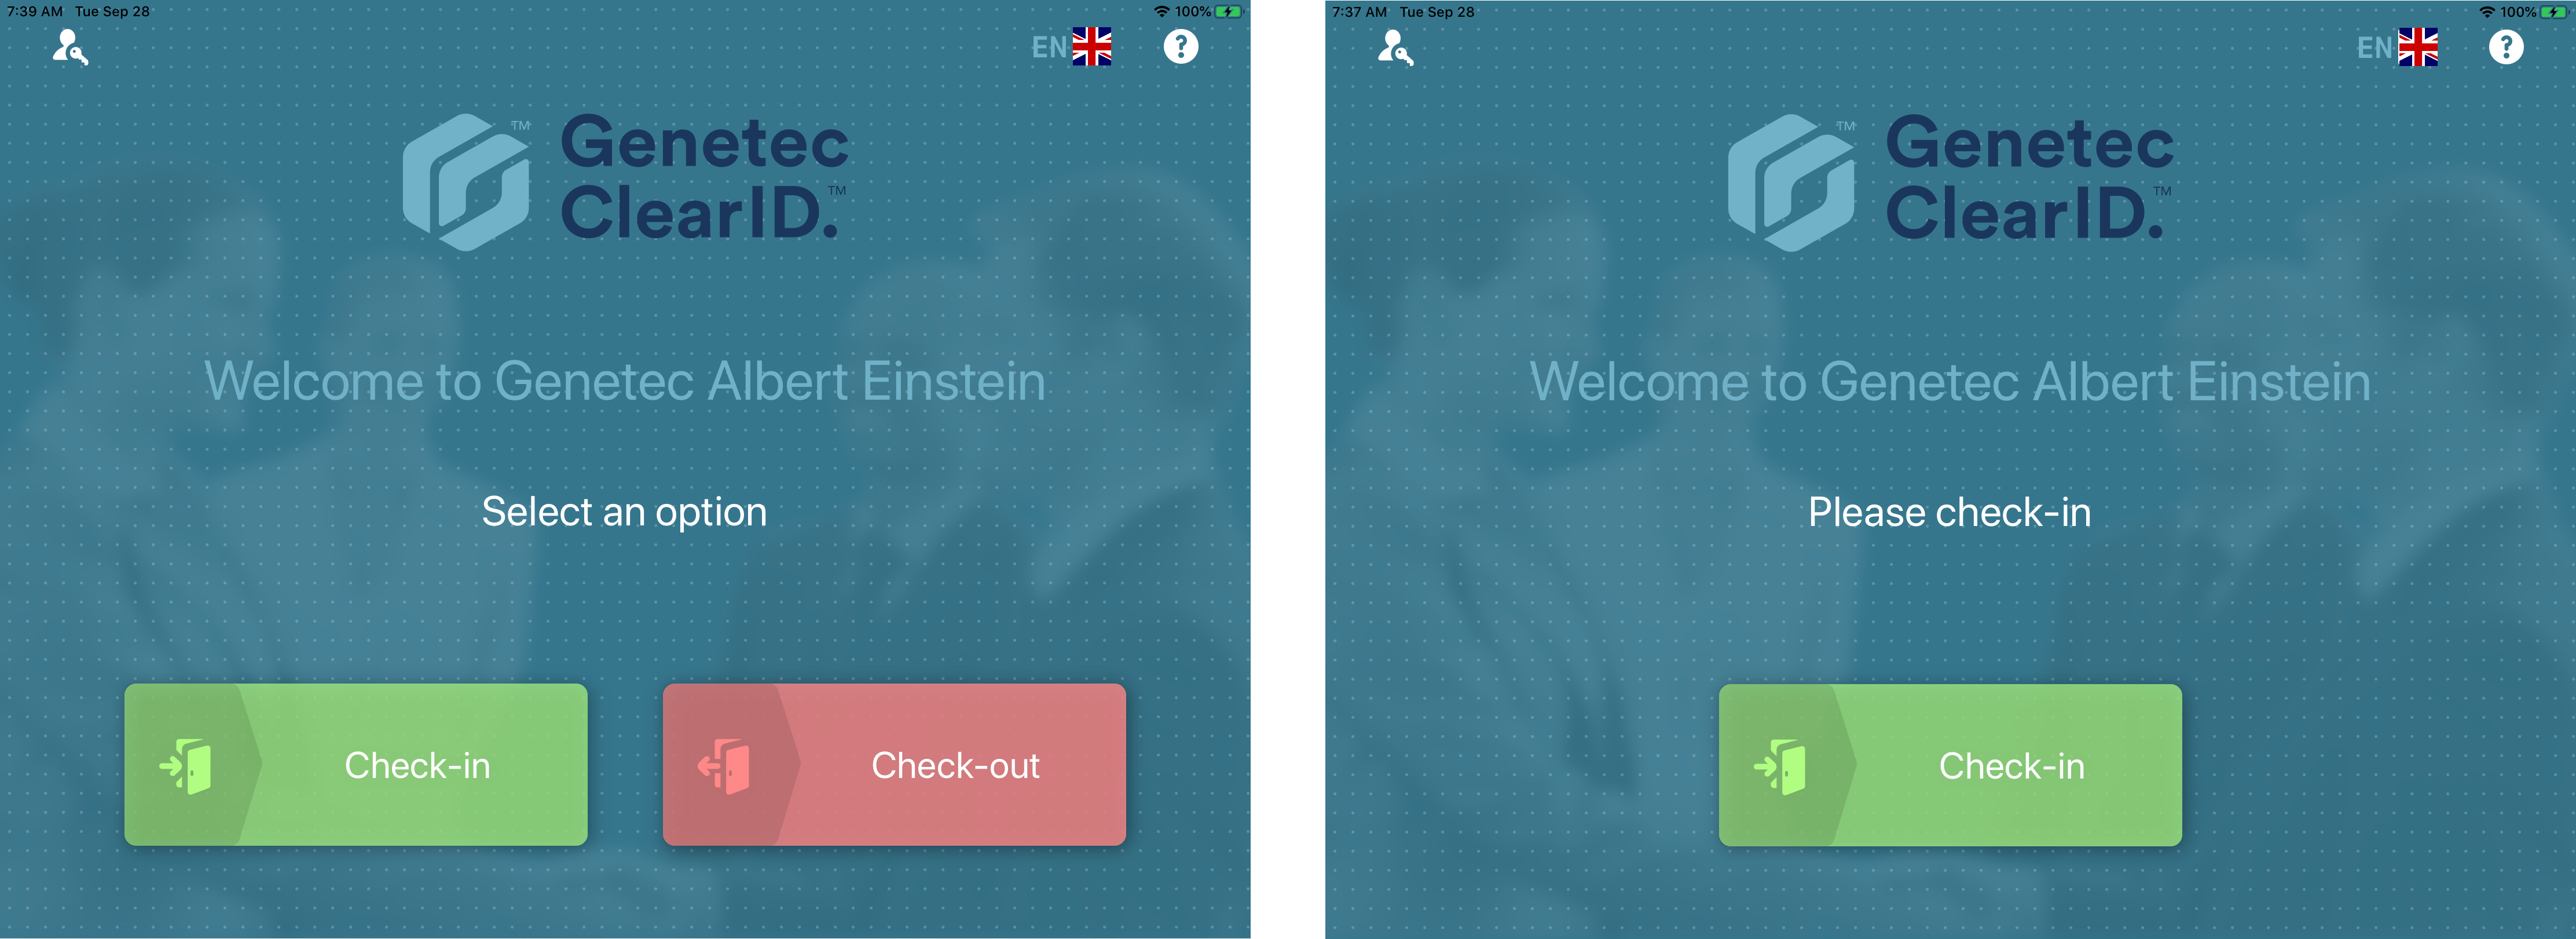 Dos ejemplos de pantallas de bienvenida en ClearID Self-Service Kiosk que muestran las opciones de registro de entrada y de salida.